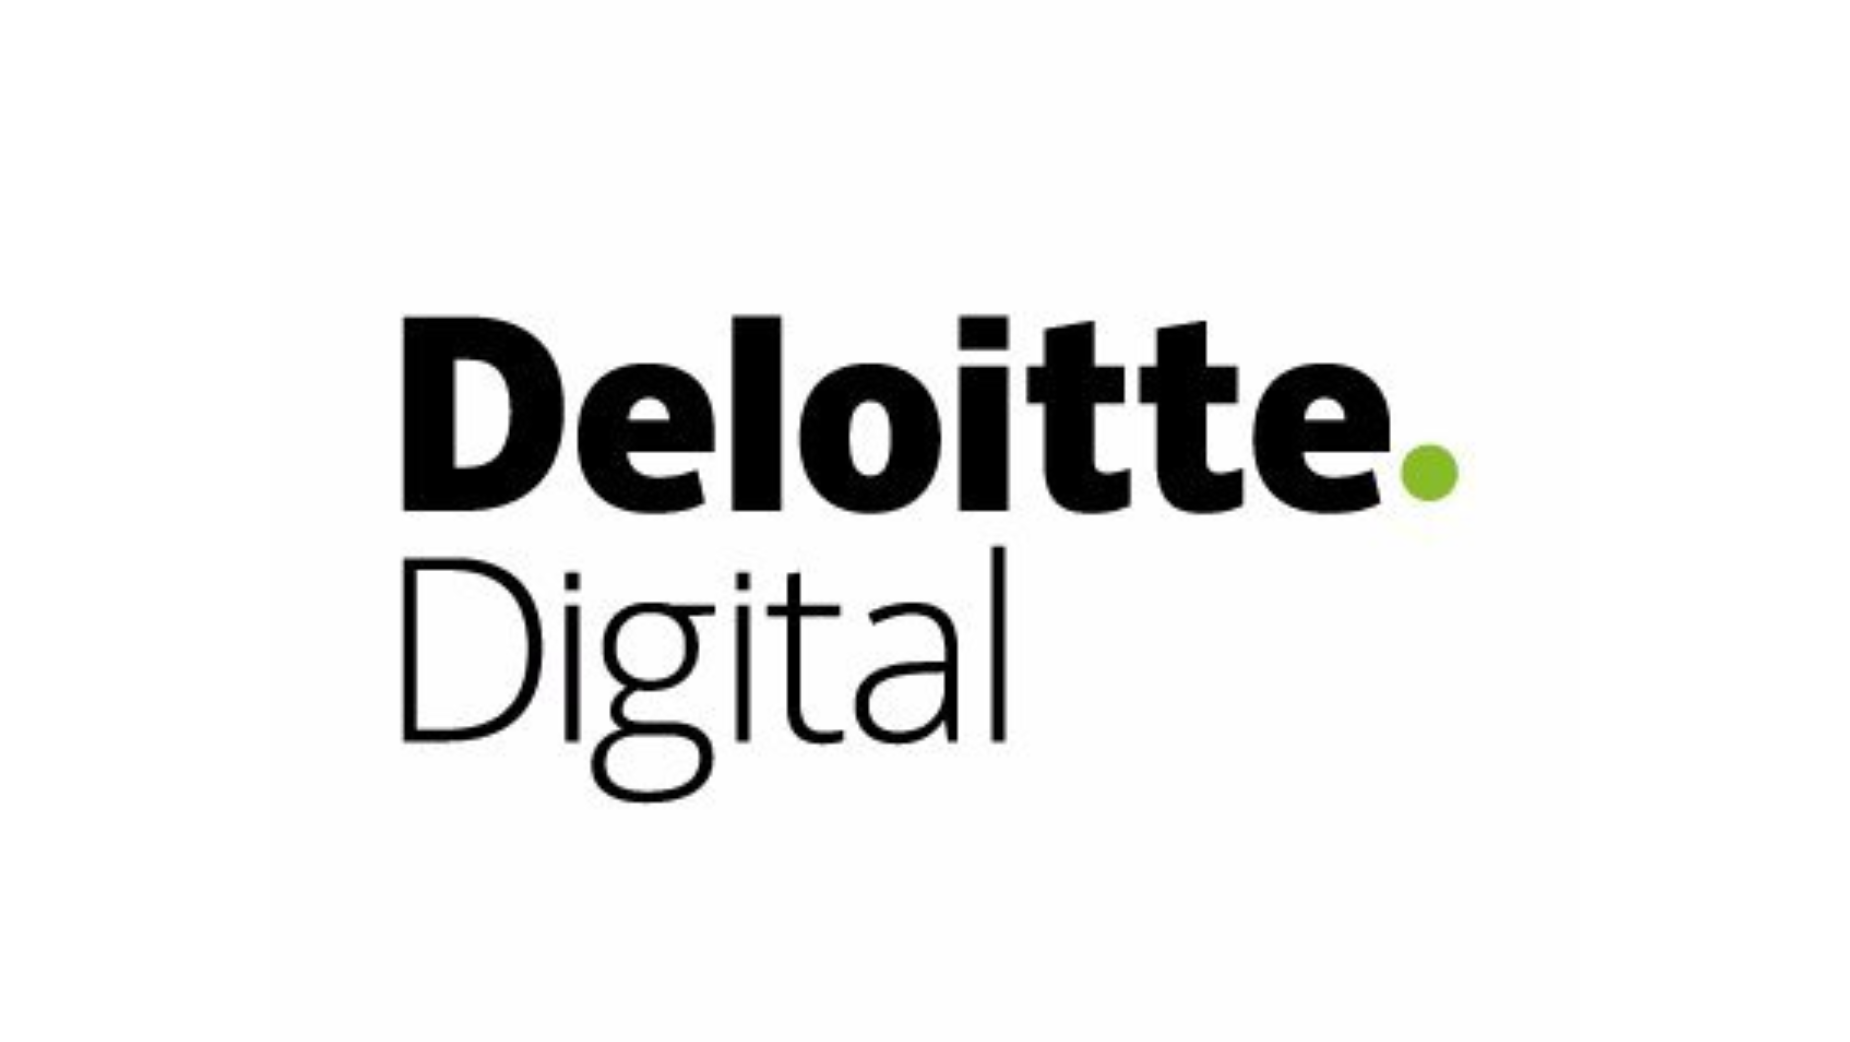 Deloitte Digital presenta una herramienta de contenido creativo impulsada por IA para revolucionar el marketing